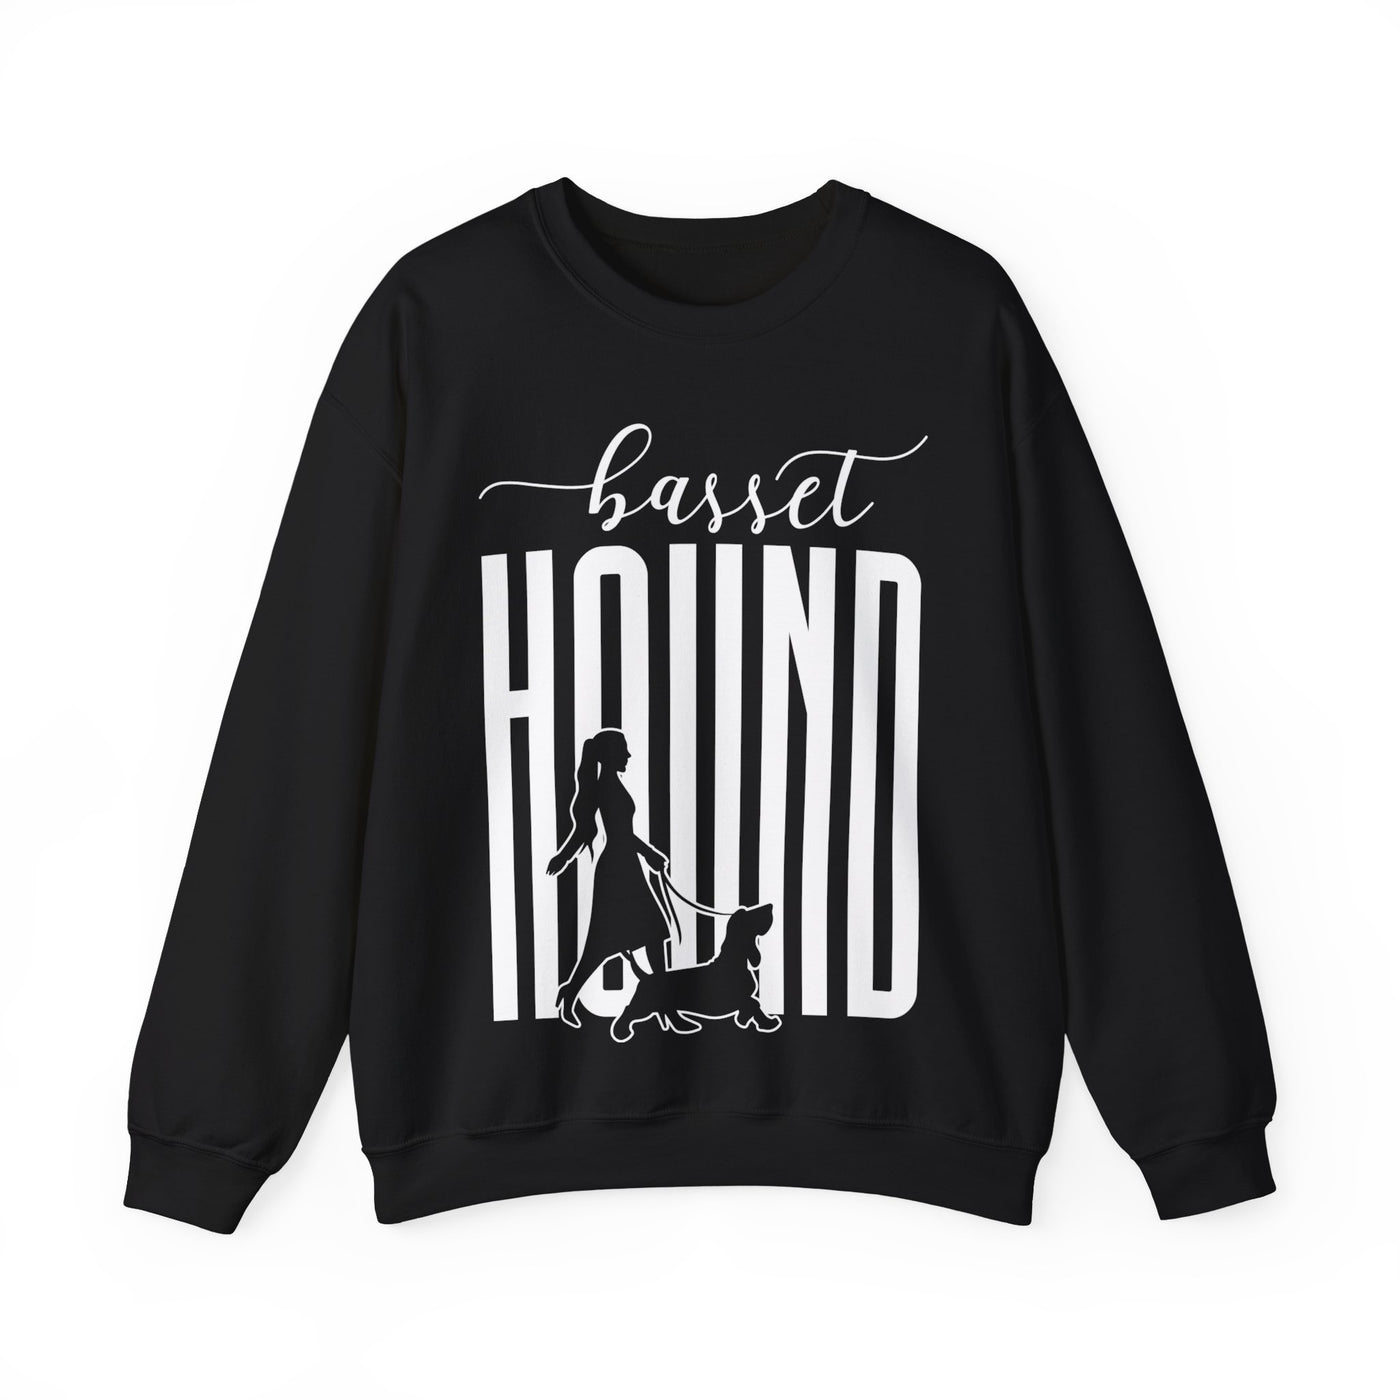 Basset Hound Dog Walking Sweatshirt